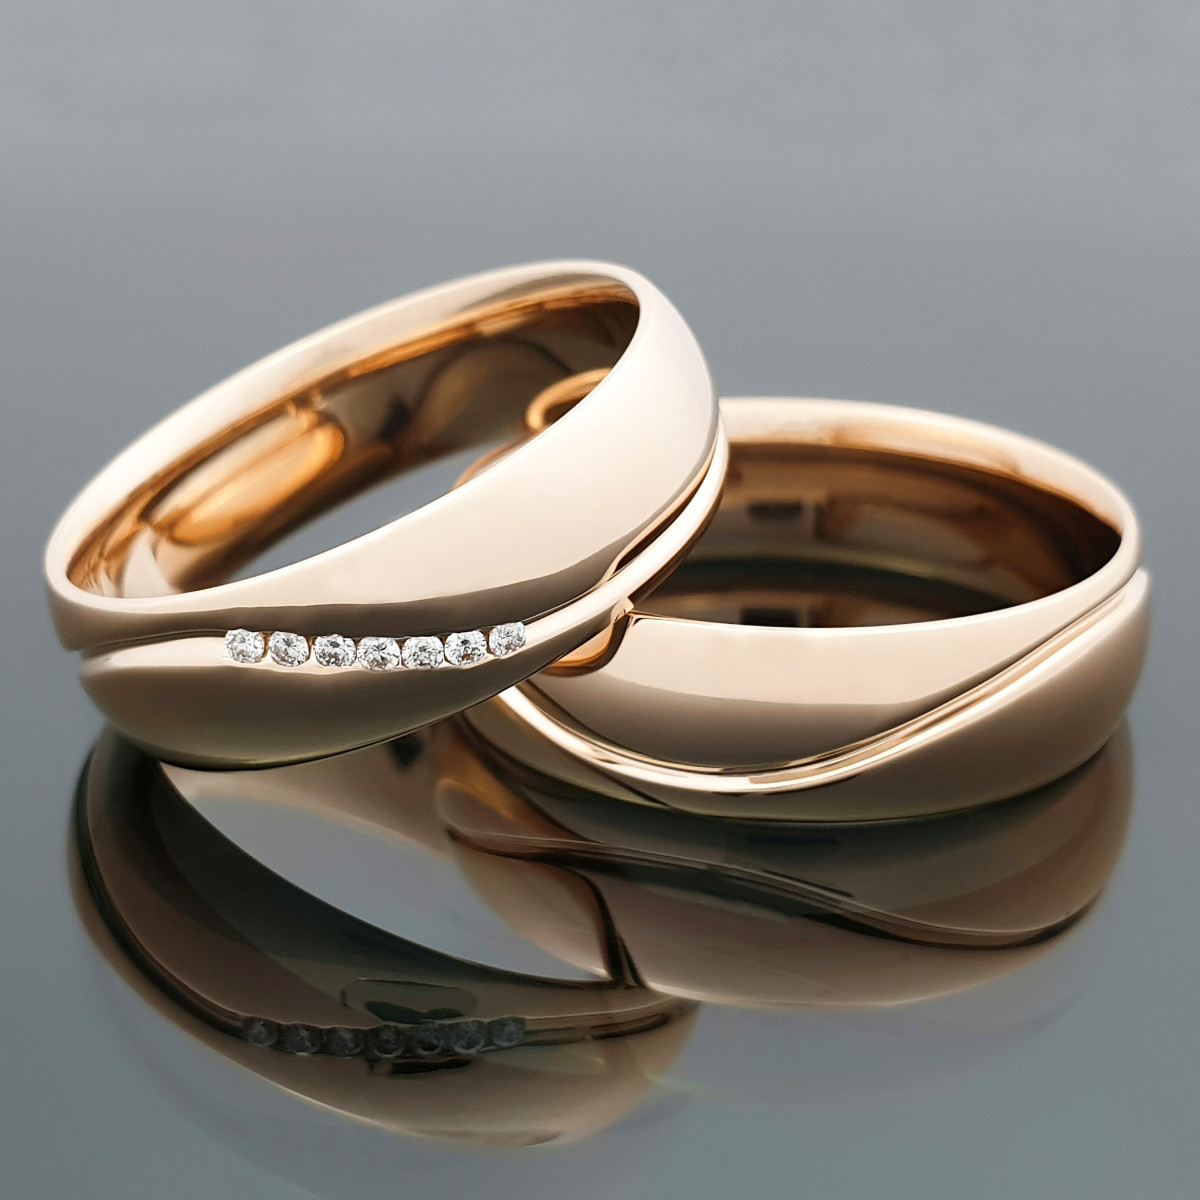 Vestuviniai žiedai su briliantais "Elegantiškos bangos" (vz144)